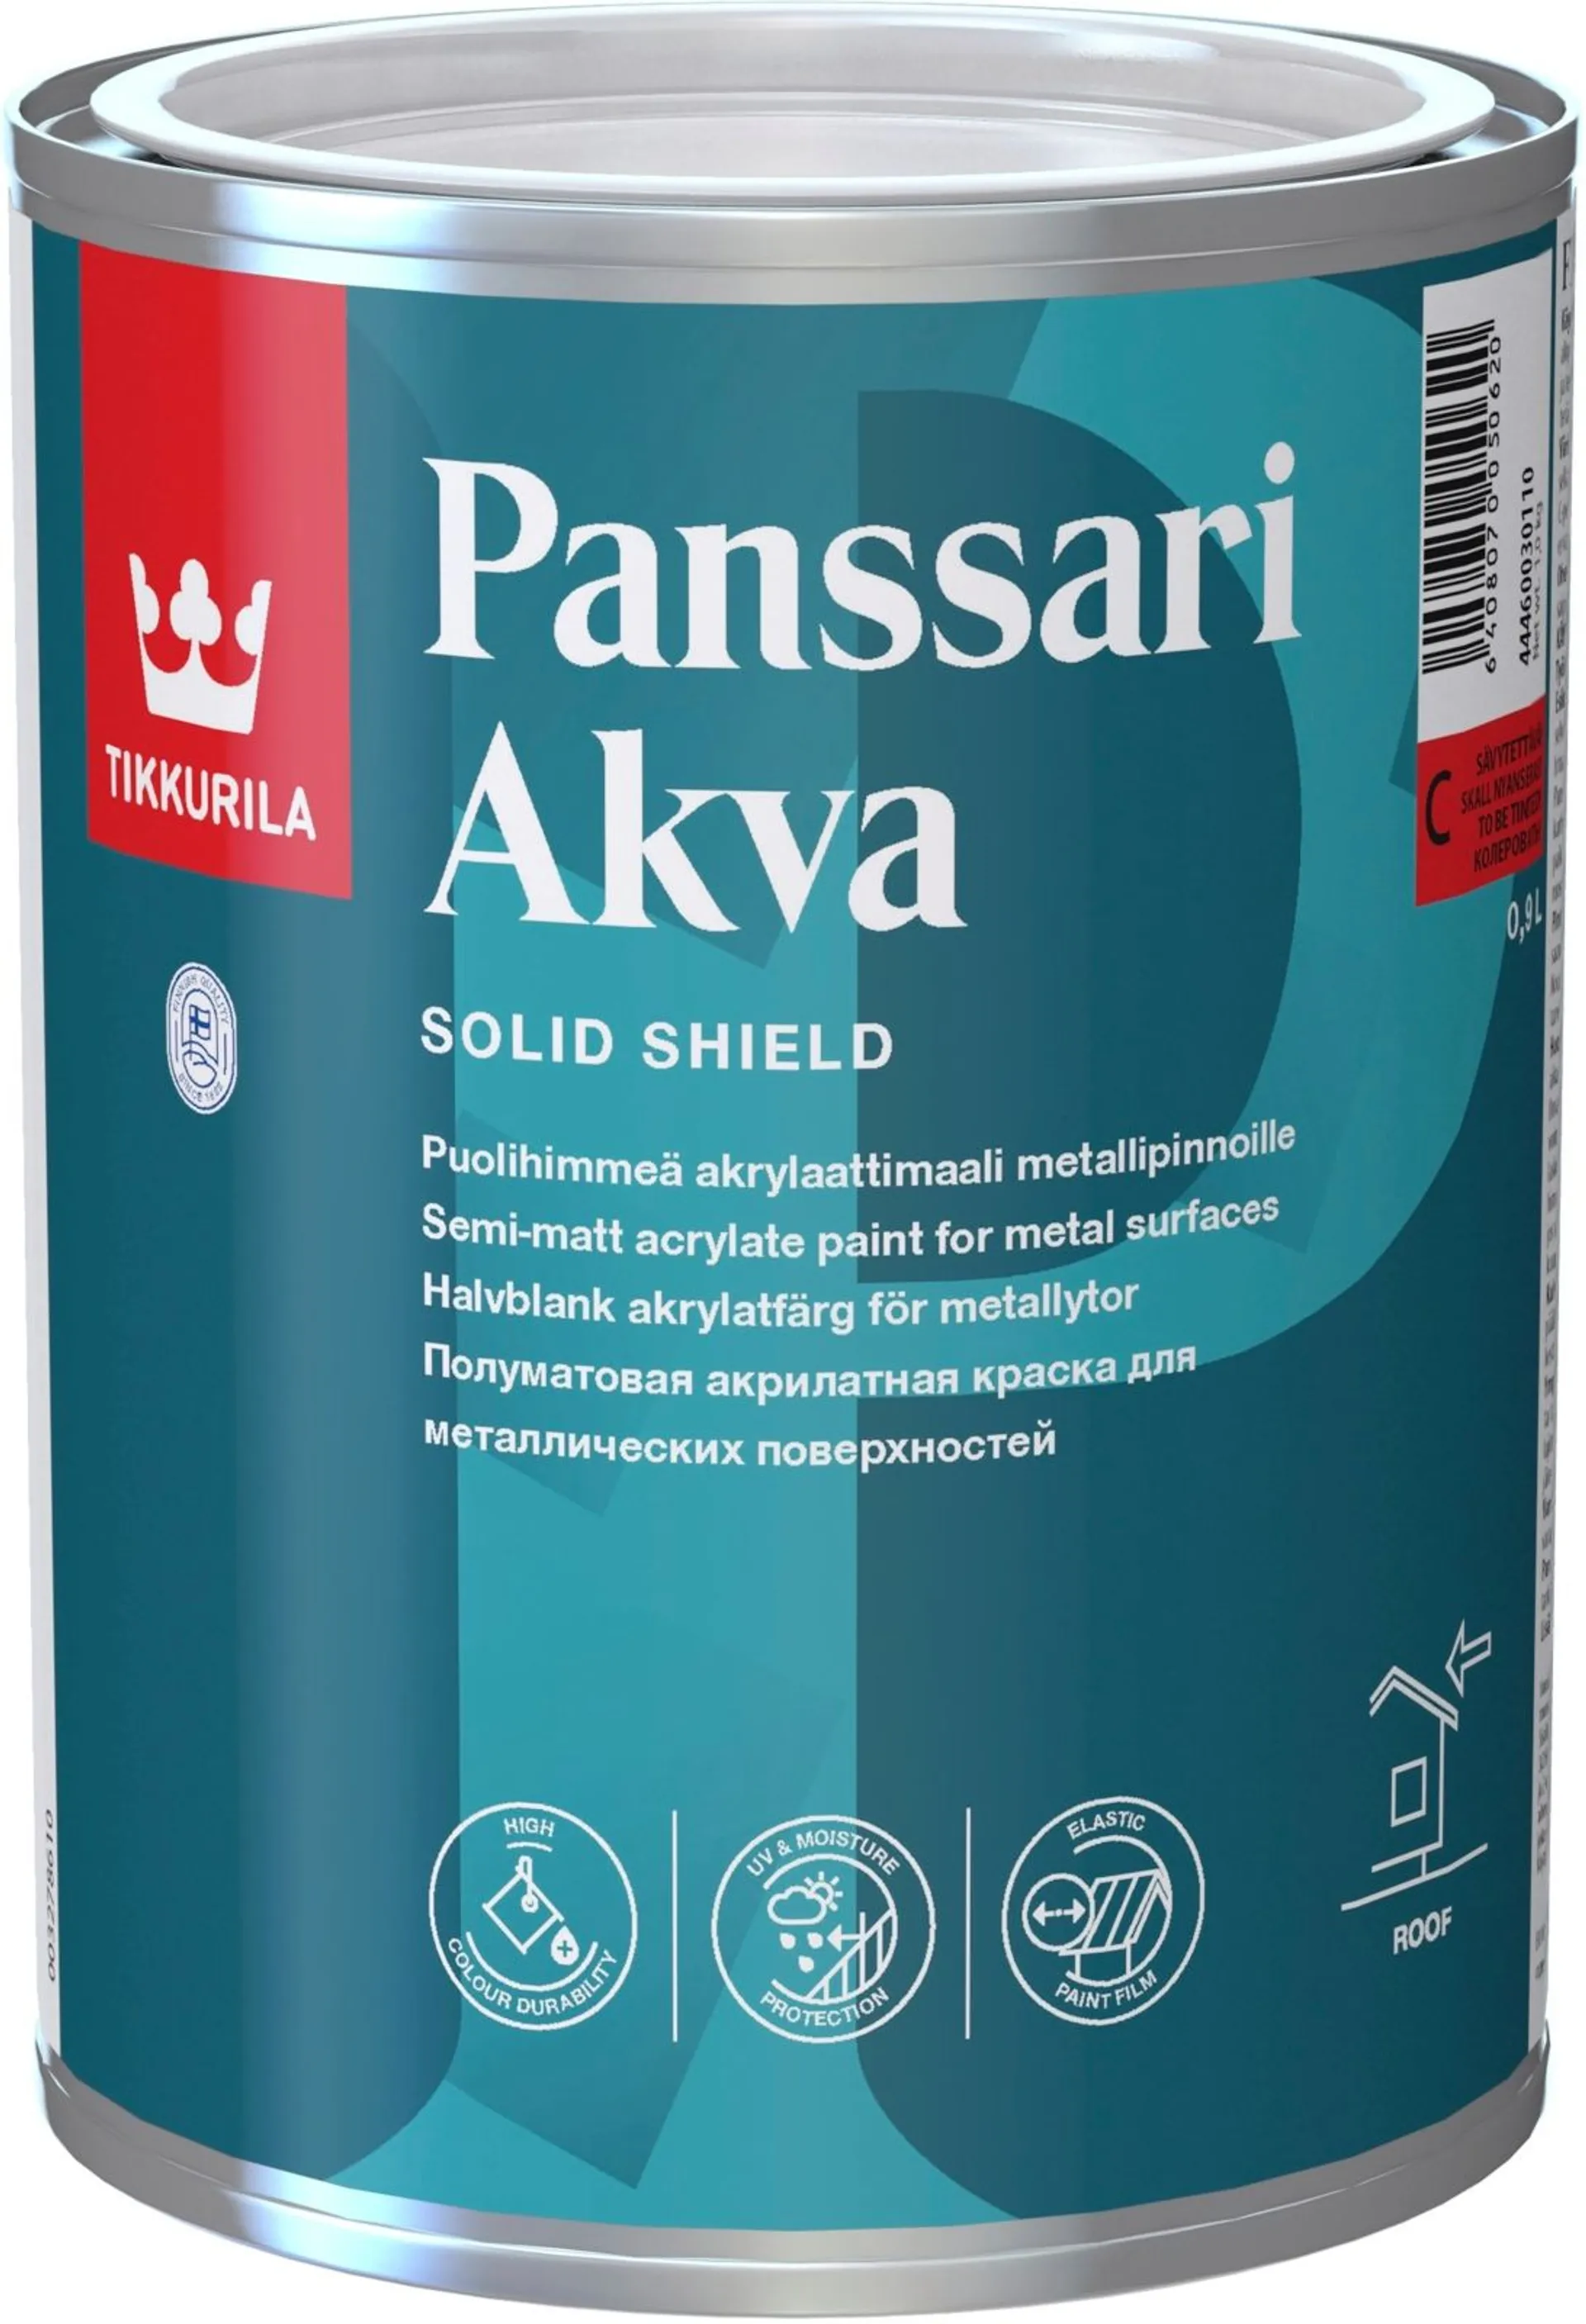 Tikkurila Panssari Akva akrylaattimaali metallipinnoille 0,9l A valkoinen sävytettävissä puolihimmeä